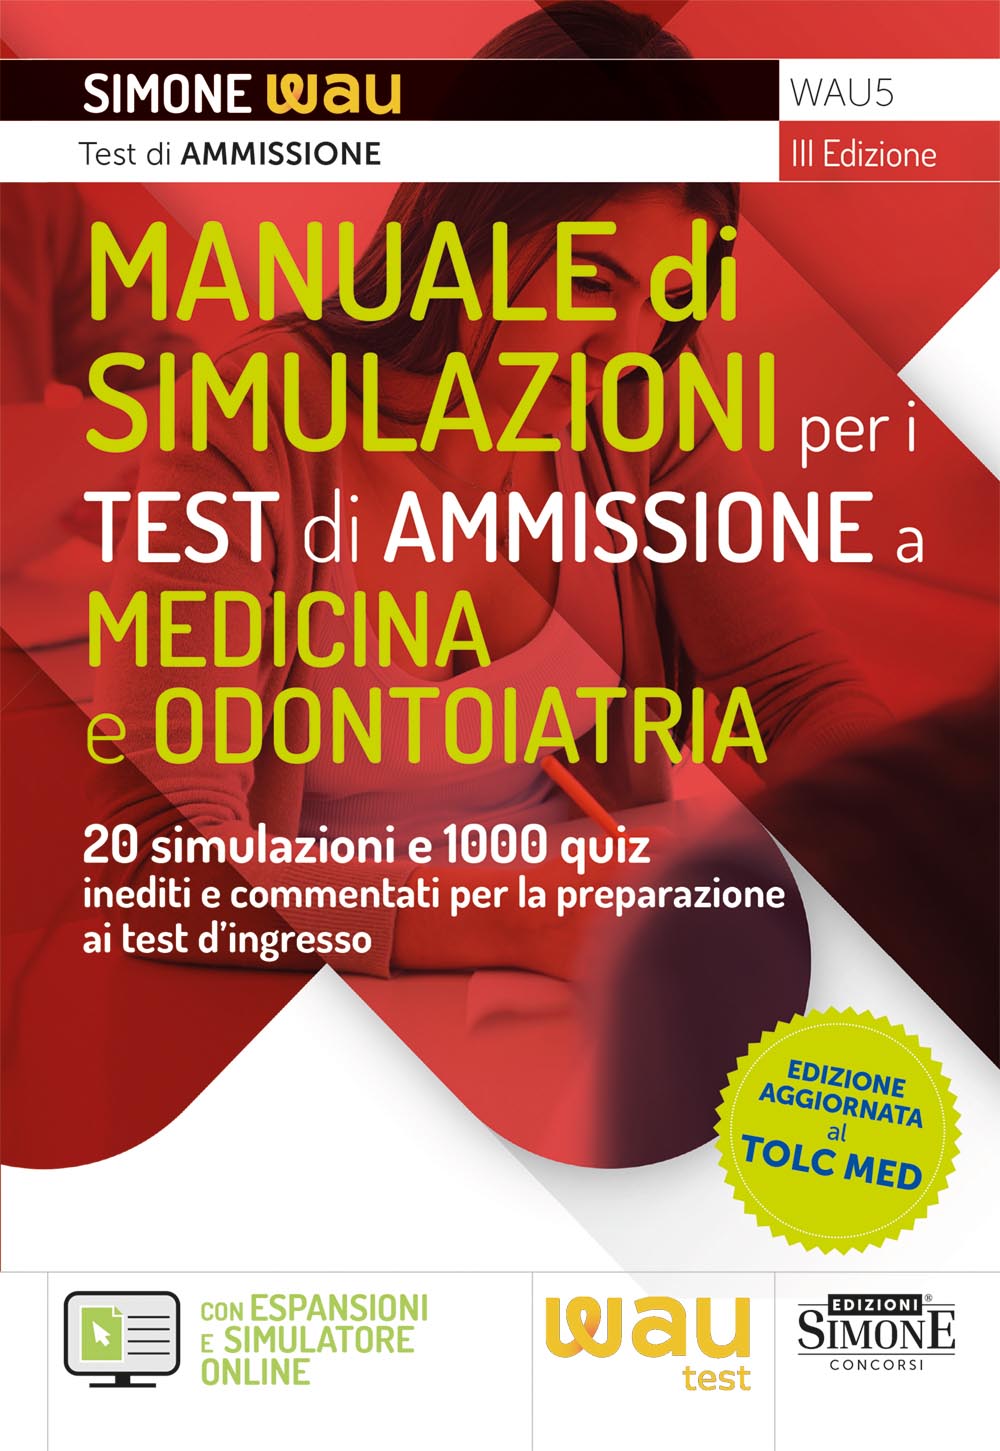 Manuale di Simulazioni per i test di ammissione a Medicina e Odontoiatria - WAU5